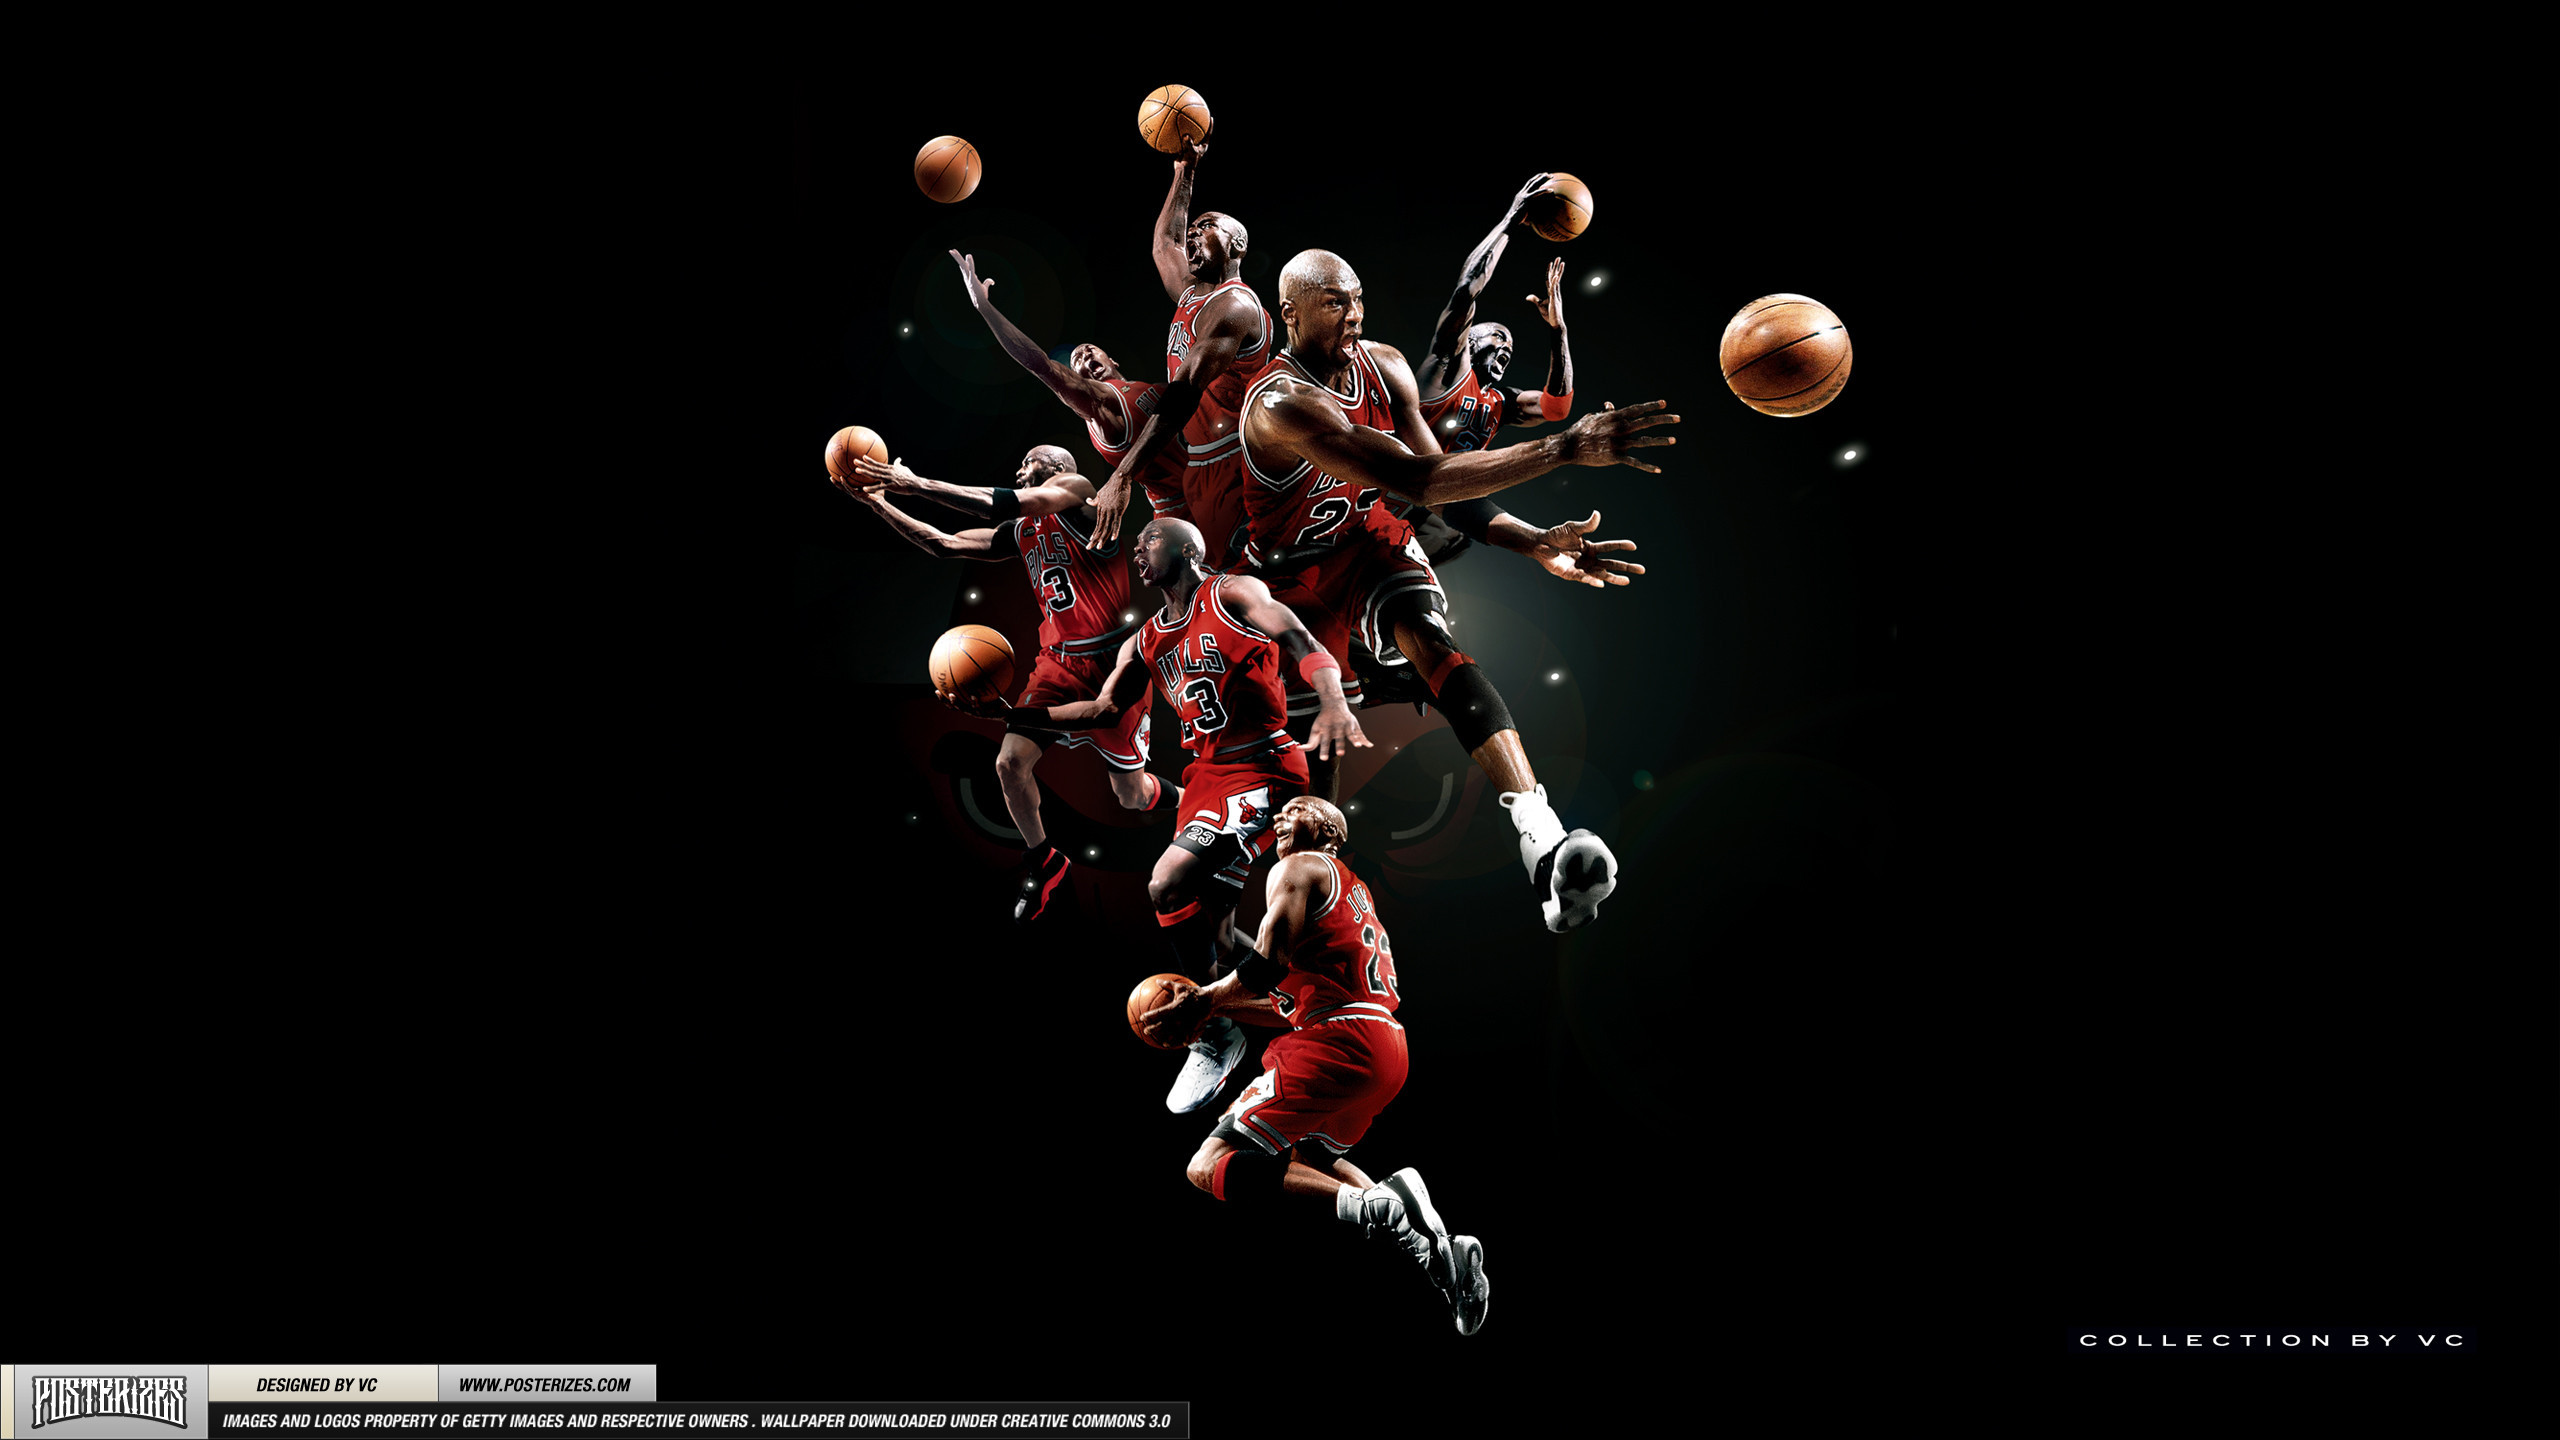 2560x1440 Michael Jordan Logo Wallpapers images